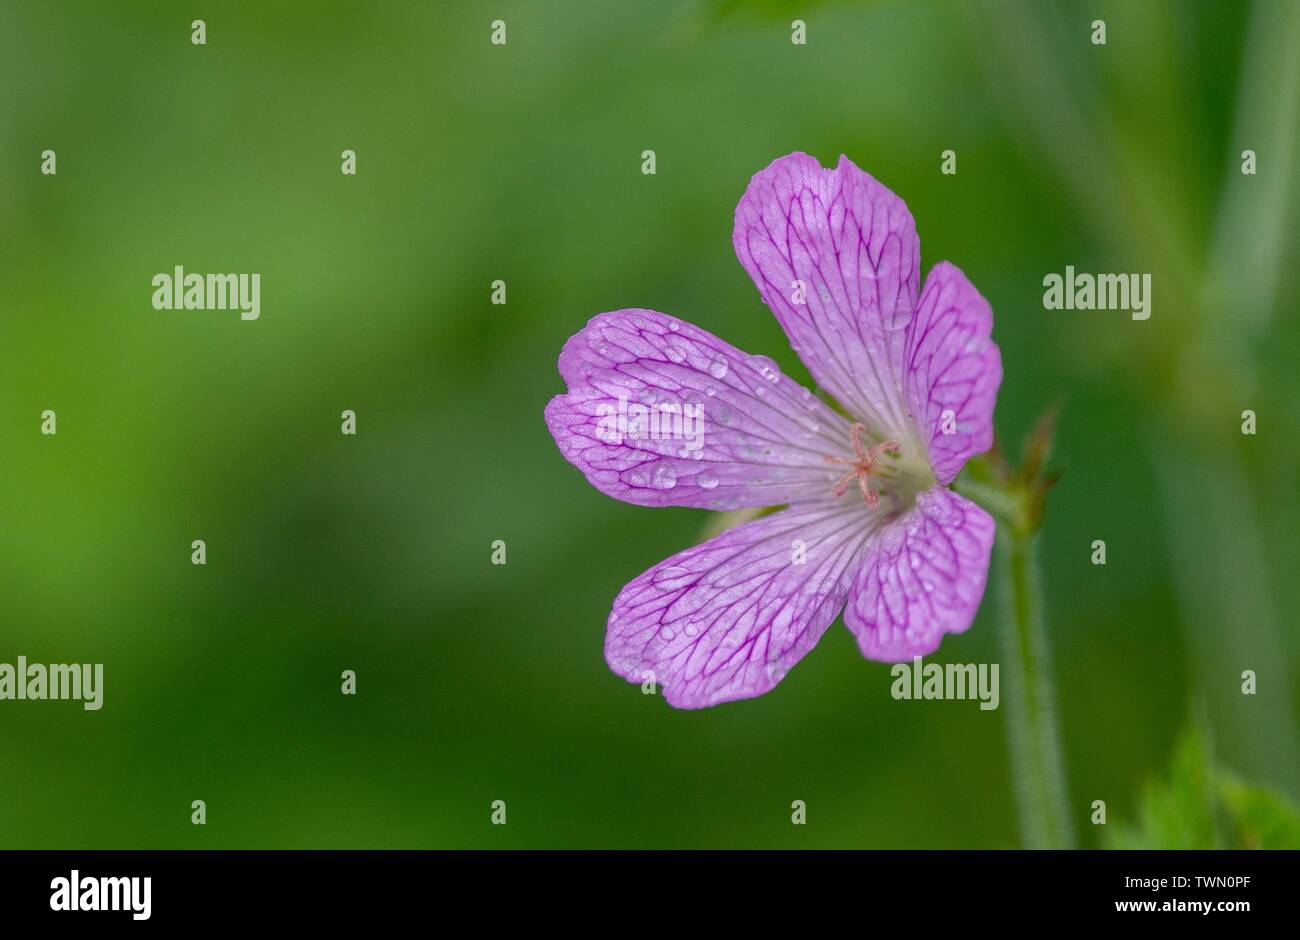 A close up photo of a pink Geranium Stock Photo